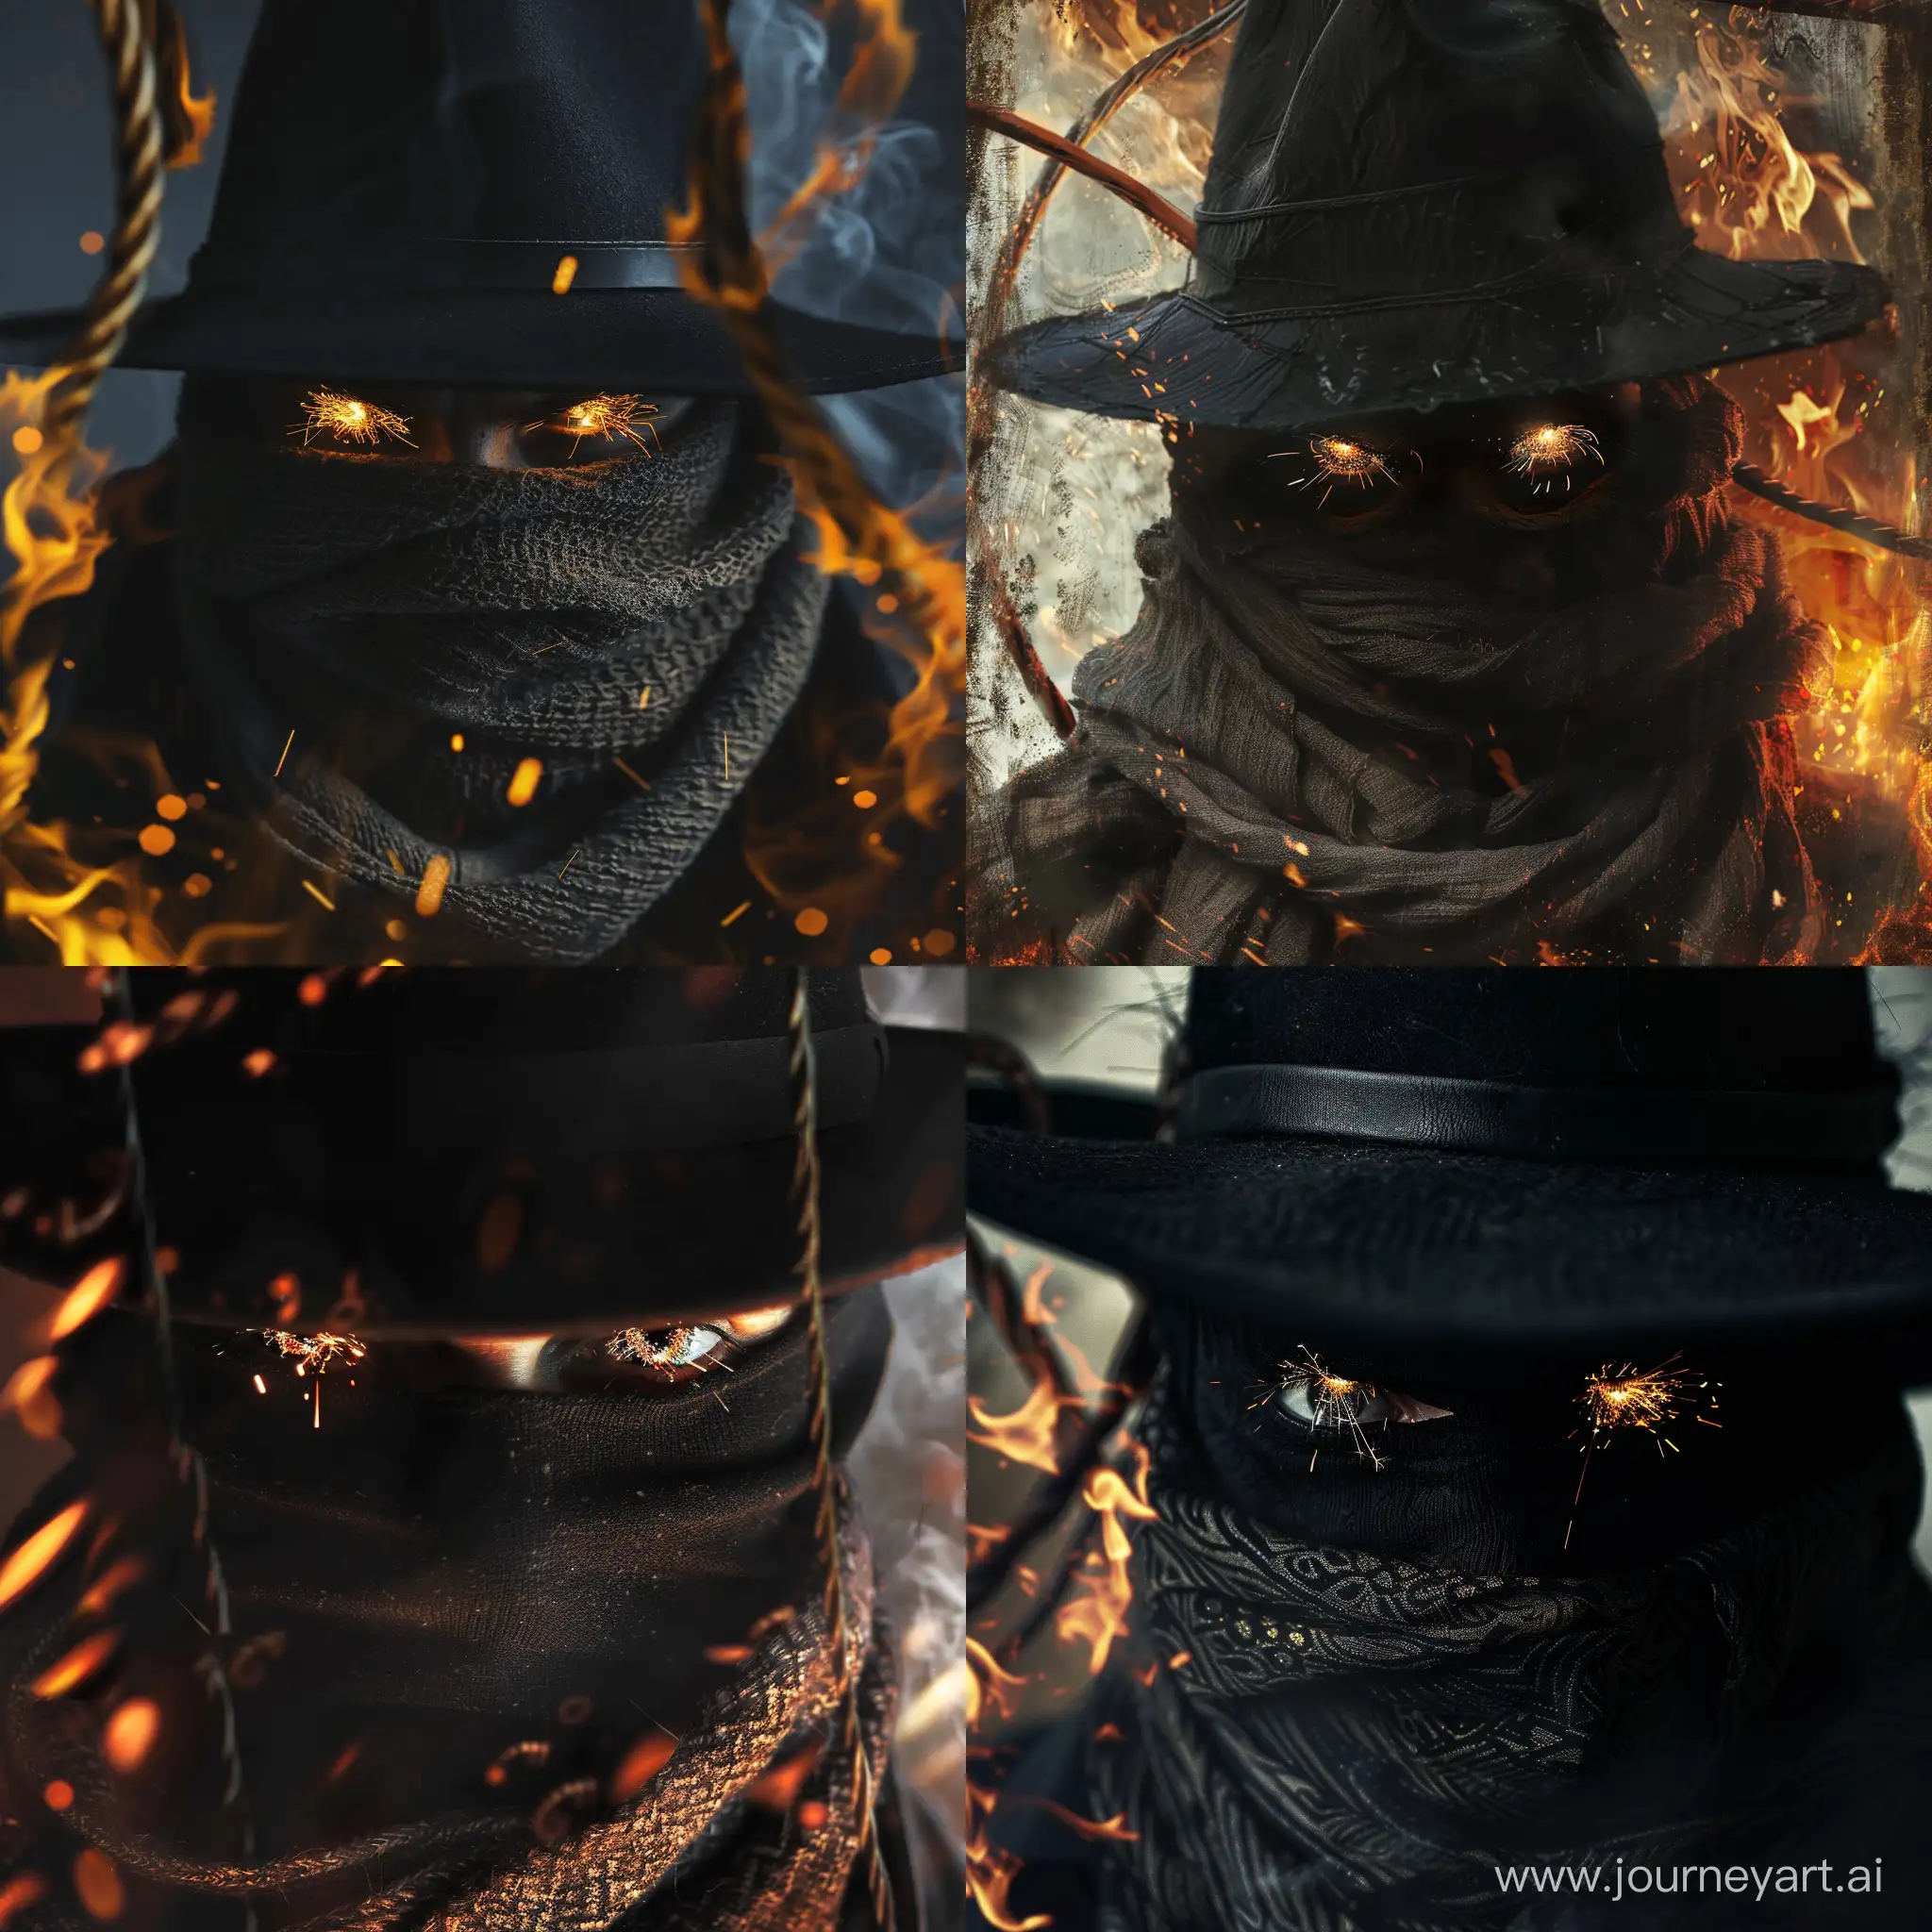 по центру черная шляпа, из-под которой выглядывают глаза с огоньками, лицо скрыто шарфом, а на фоне хлыст в огне